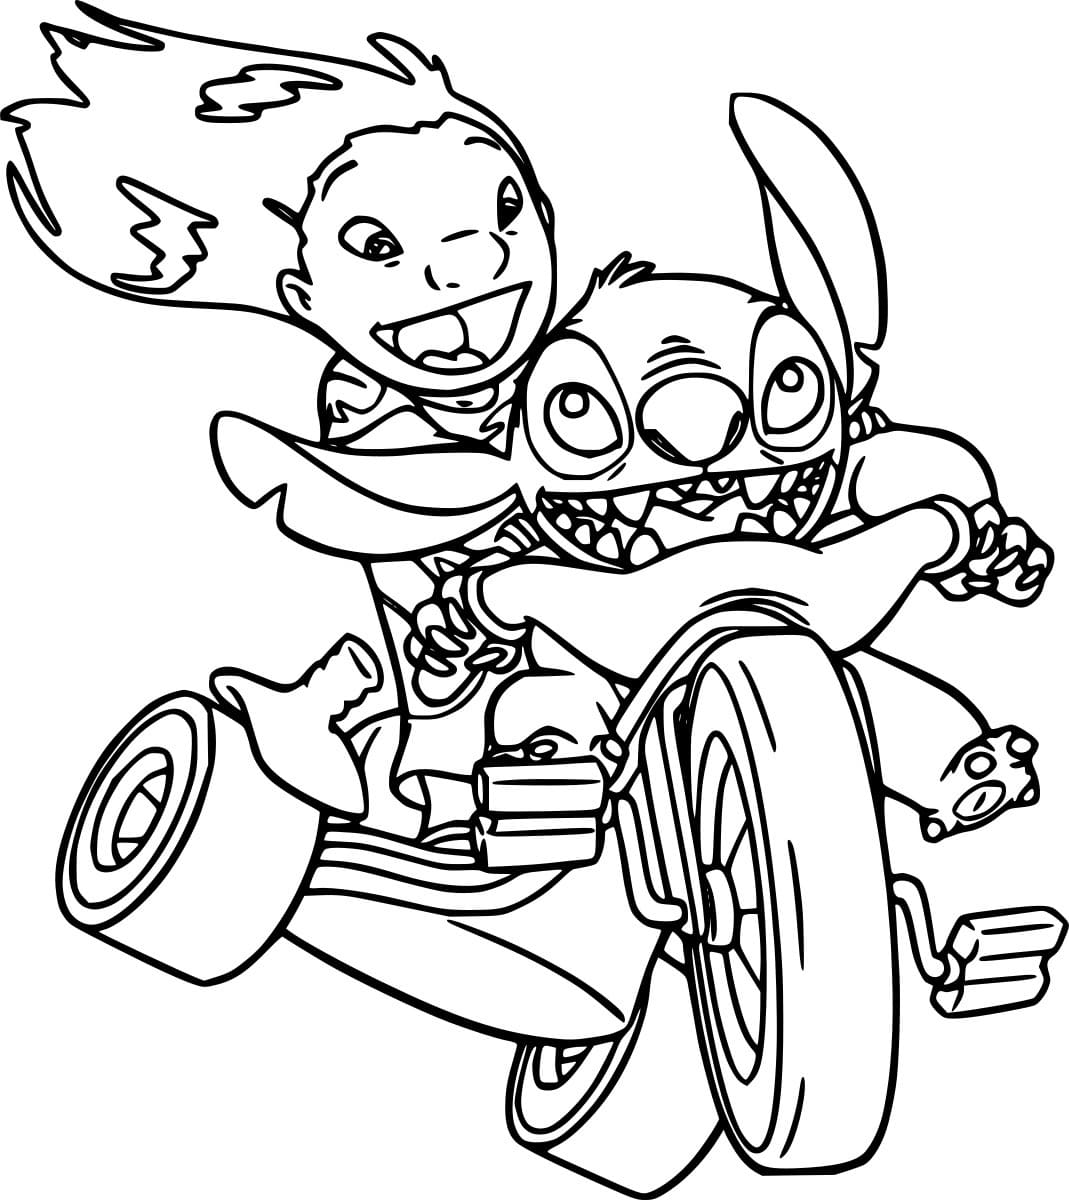 Stitch und Lilo auf dem Dreirad